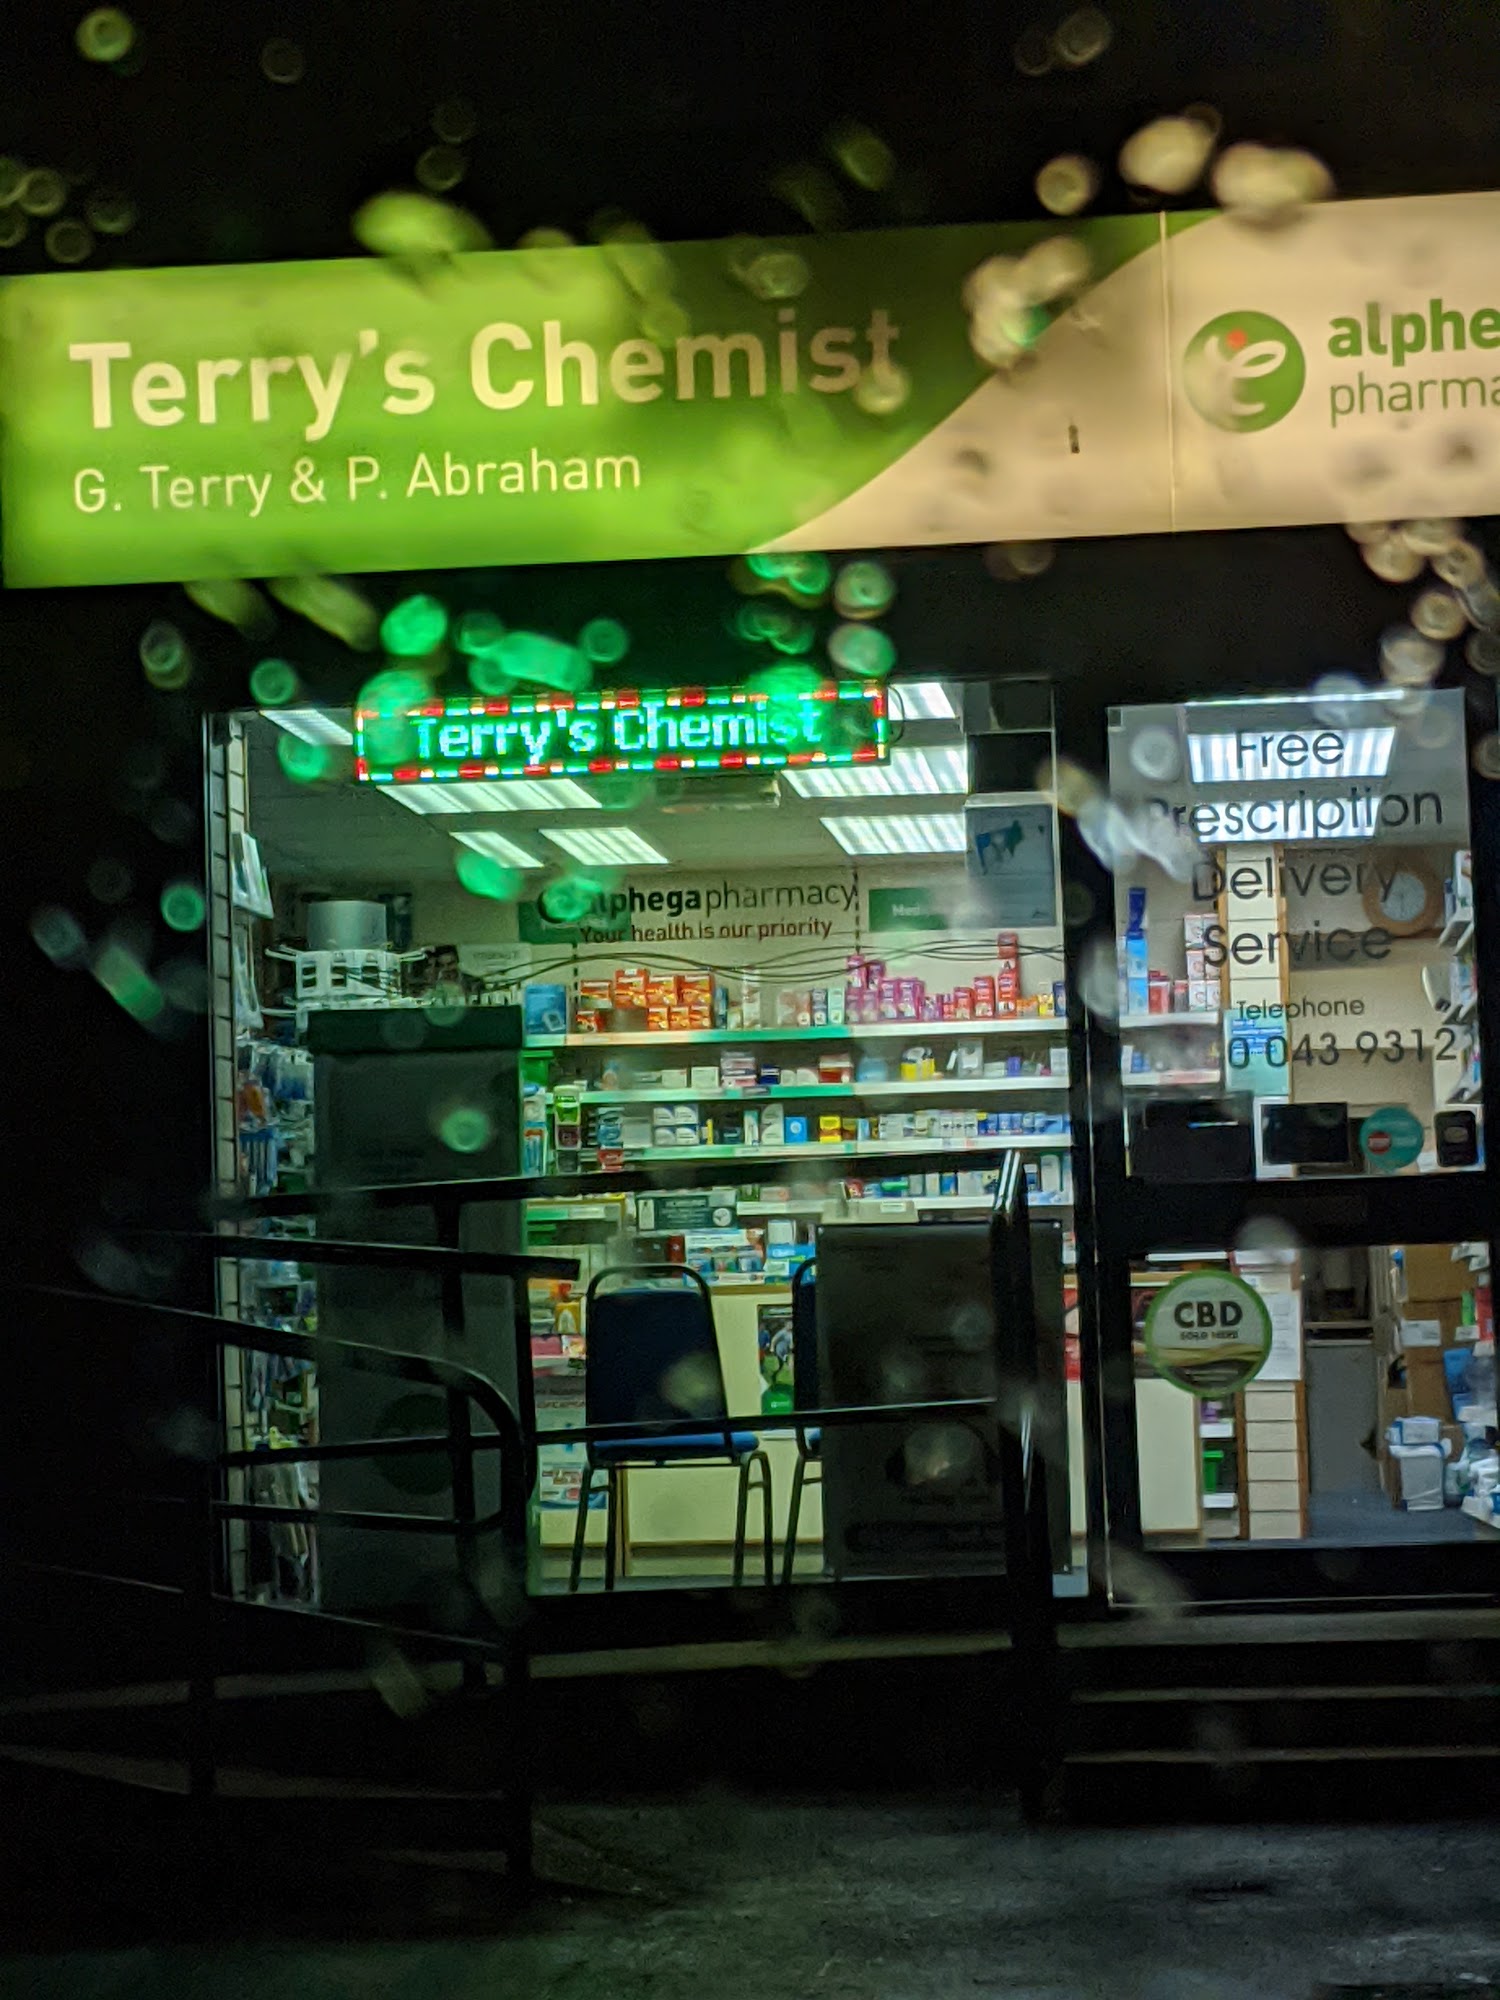 Terry's Chemist - Alphega Pharmacy